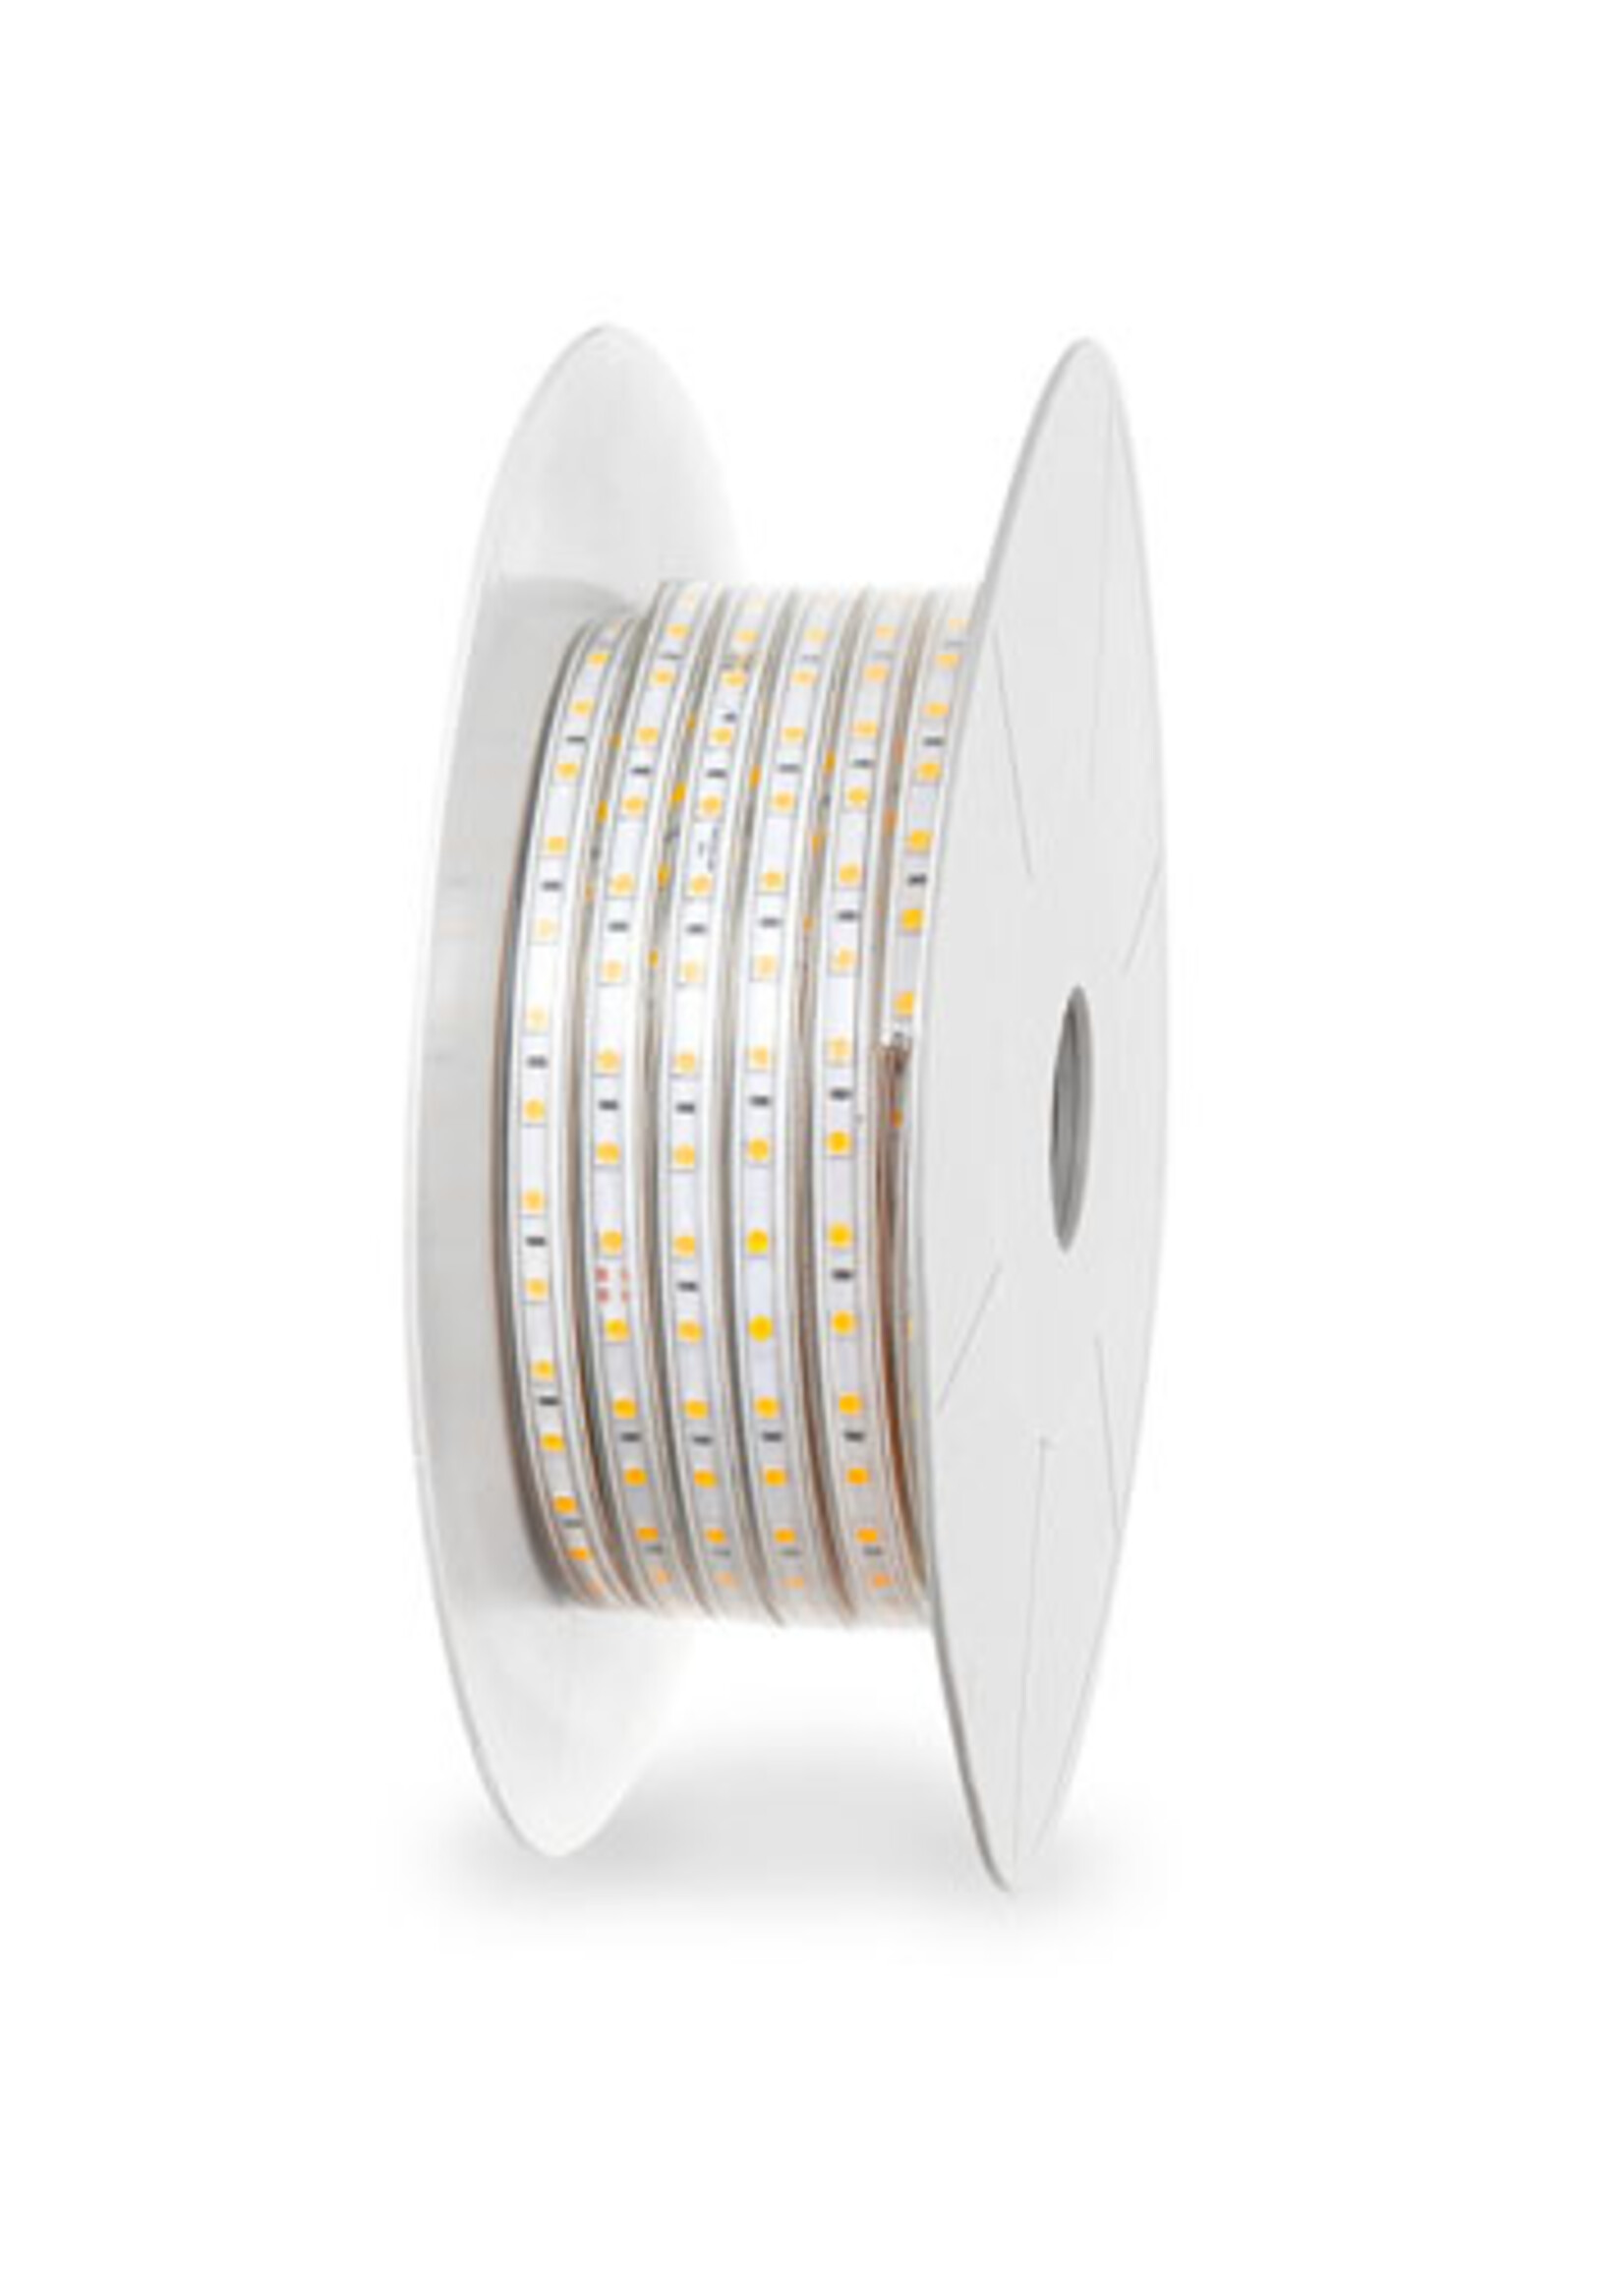 LEDWINKEL-Online LED Strip 50 meters IP65 Pro-120 LEDS/m 220V